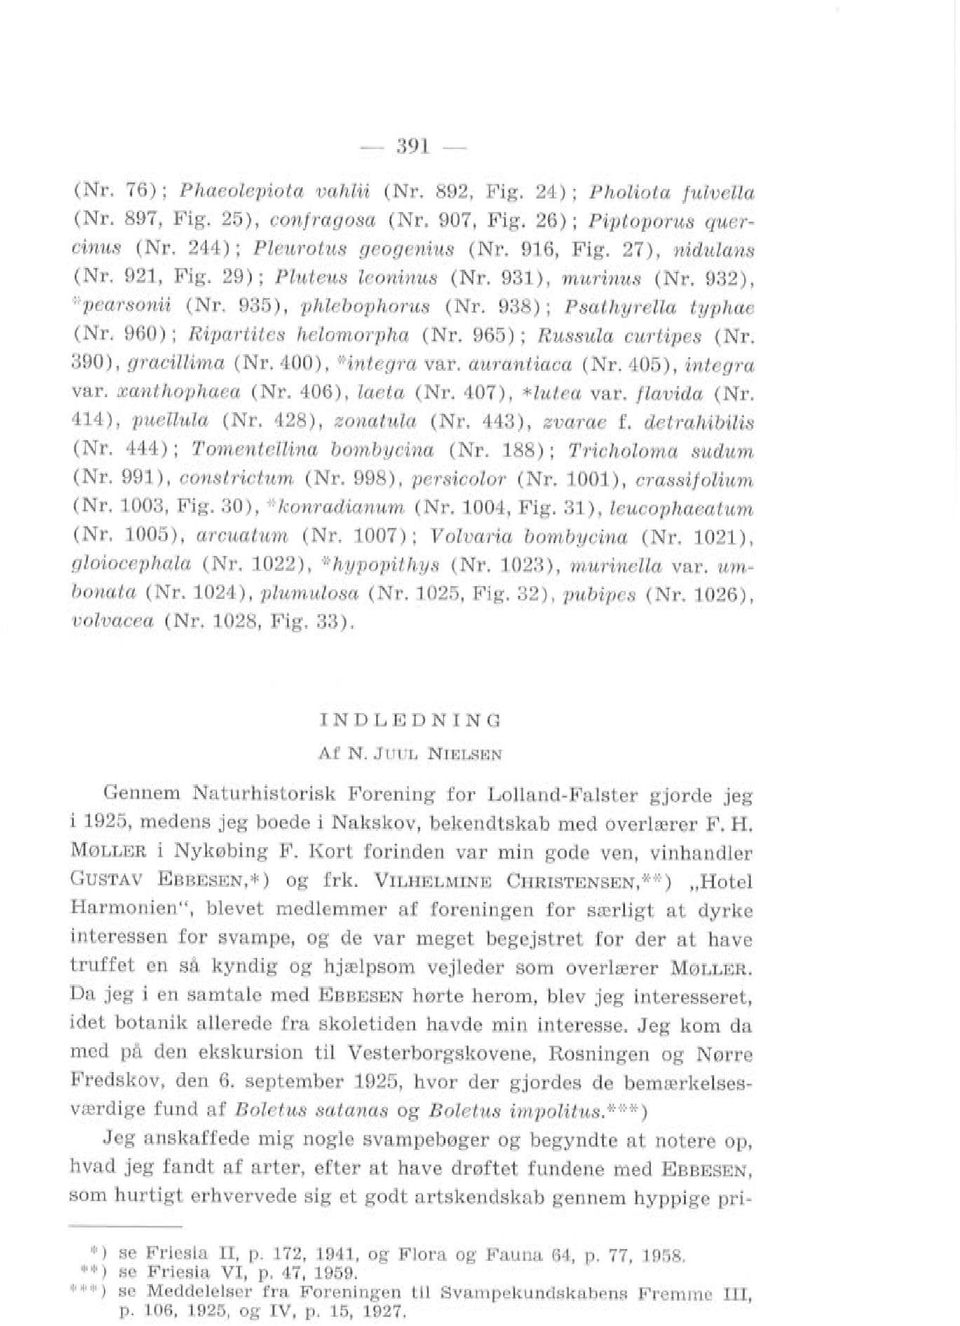 965); RussuZa curtipes (Nr. 390), gracillima (Nr. 400), '+integra var. aurantiaca (Nr. 405), integra var. xanthophaea (Nr. 406), laeta (Nr. 407), *Zutea var. flavida (Nr. 414), puezlula (Nr.